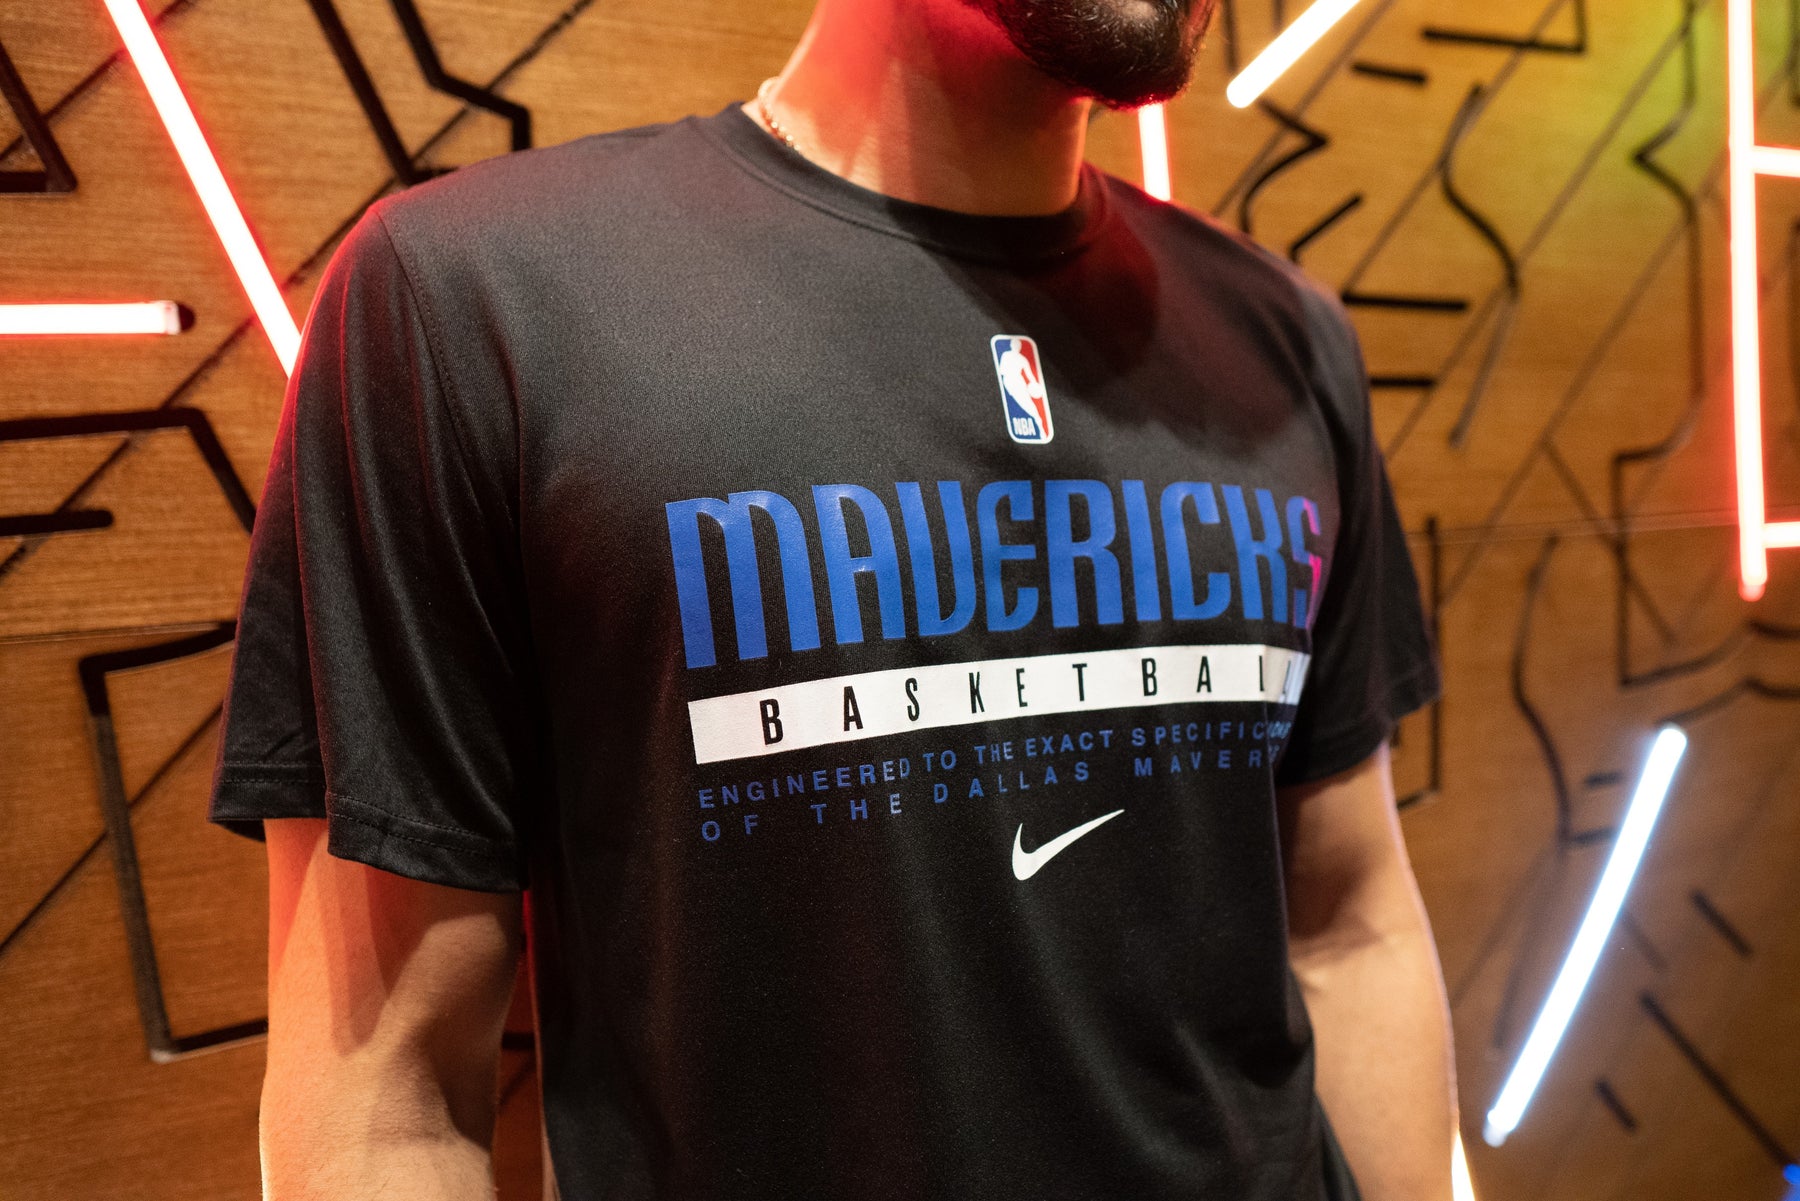 Dallas Mavericks Men's Nike Dri-FIT NBA Training T-Shirt